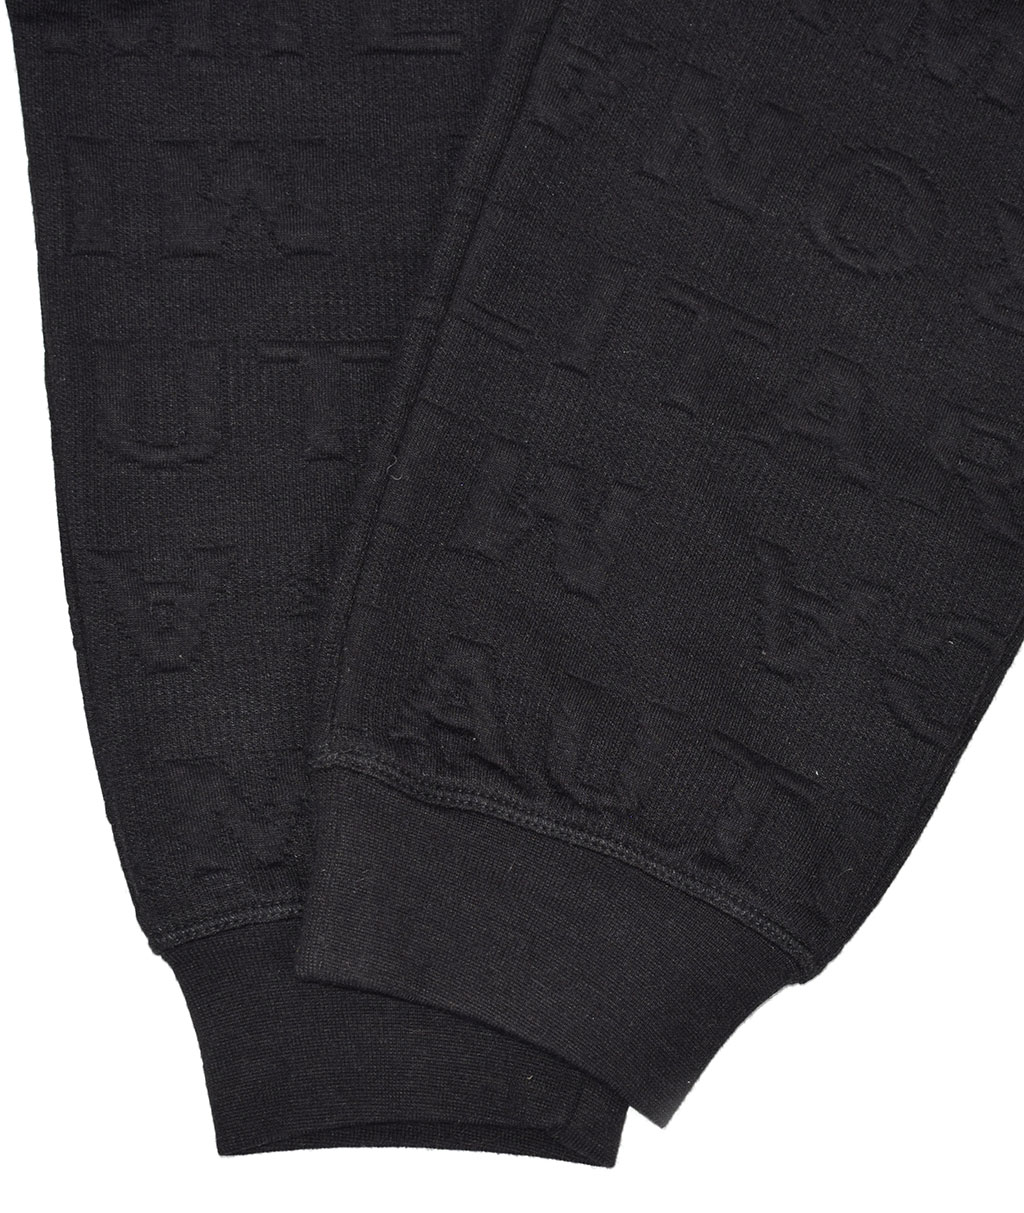 Женские брюки спортивные AERONAUTICA MILITARE FW 19/20 nero (PF 749) 